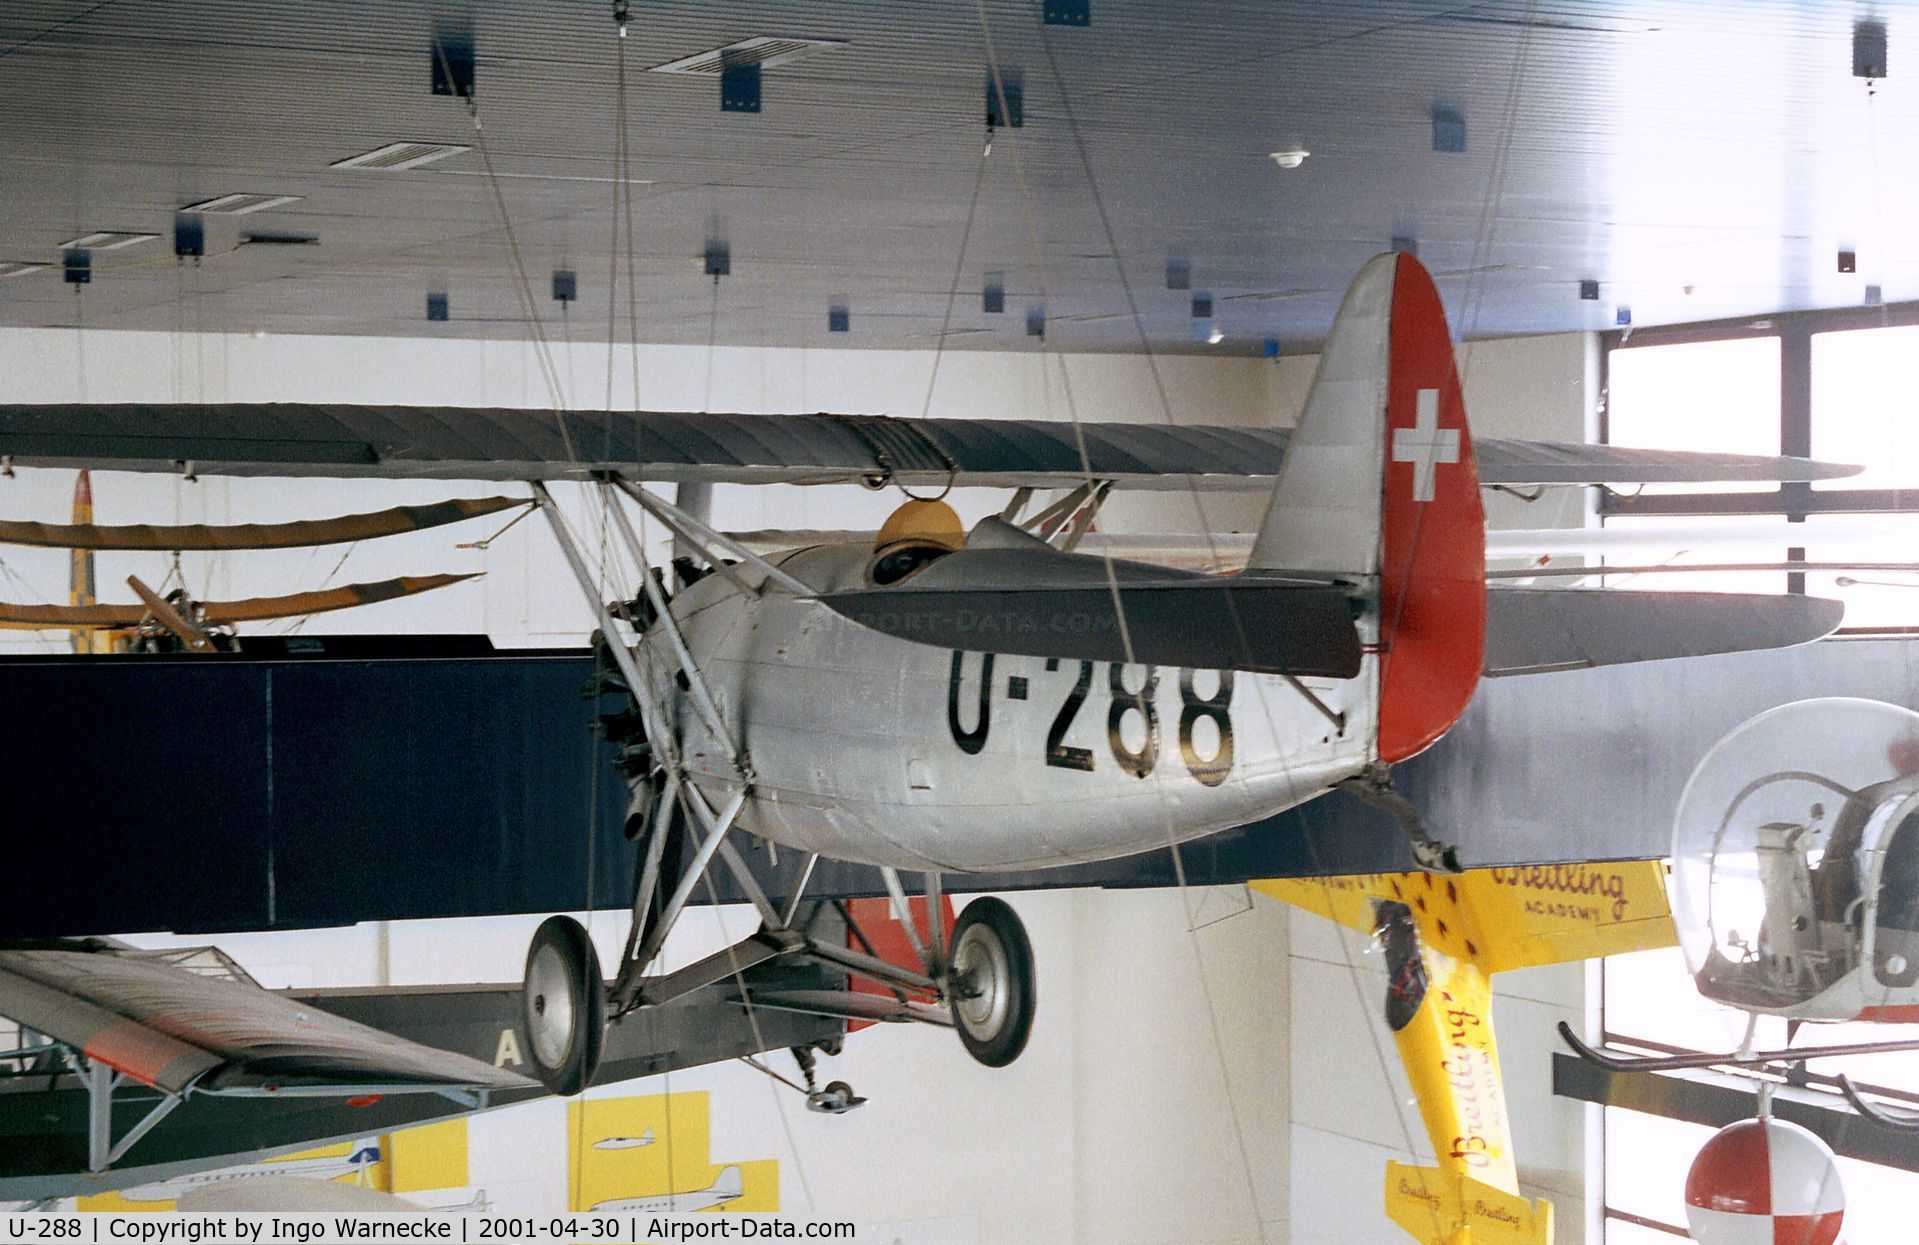 U-288, 1933 Dewoitine D.26 C/N 320, Dewoitine D.26 at the Verkehrshaus der Schweiz, Luzern